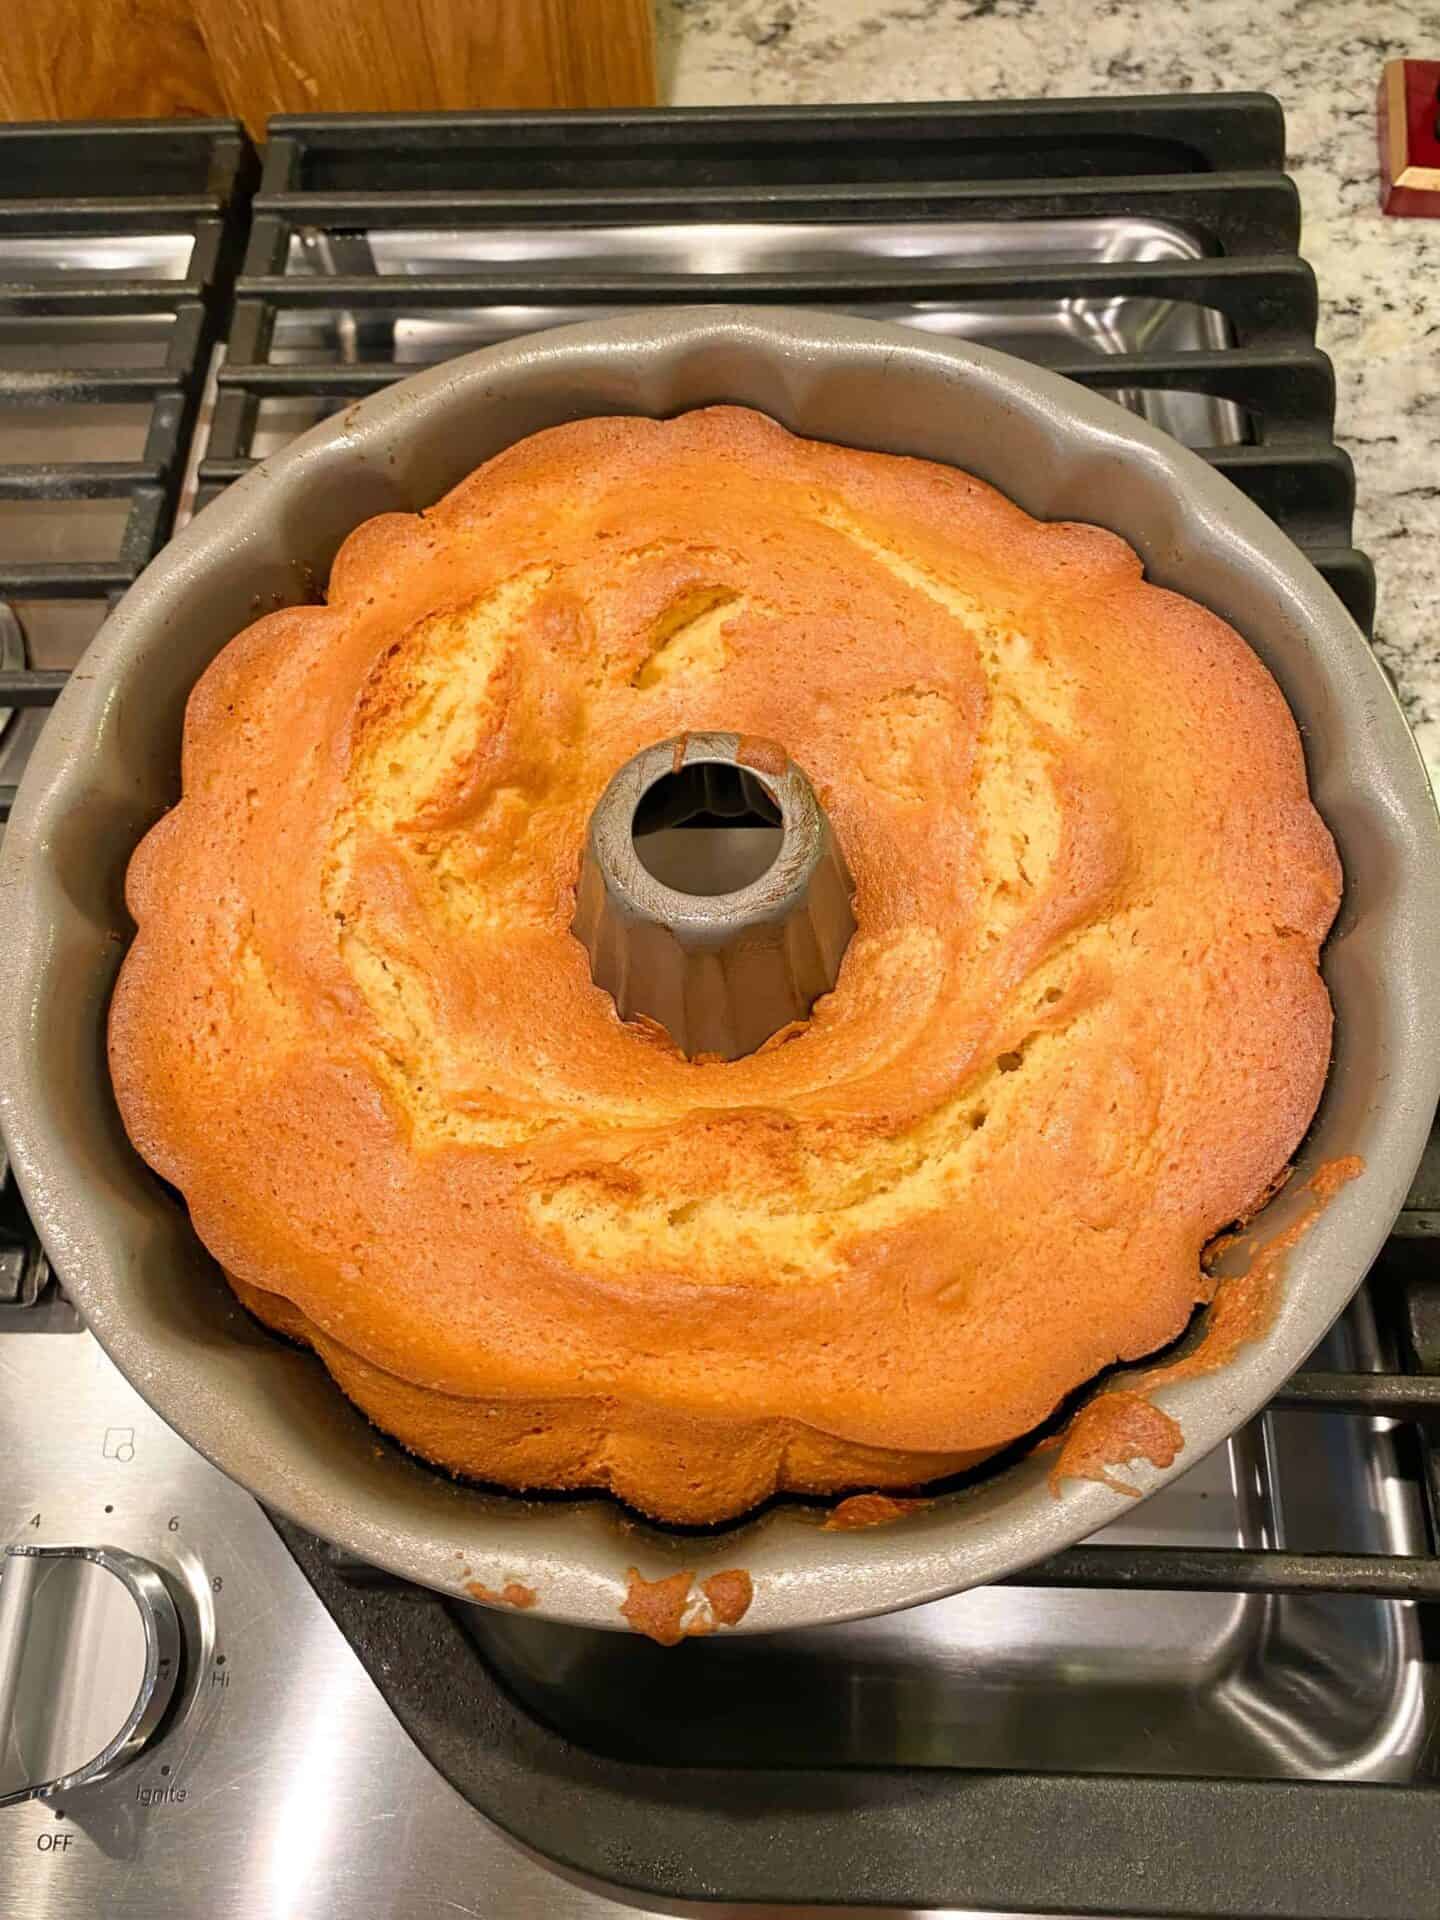 bake-cake-at-350-until-cooked-through